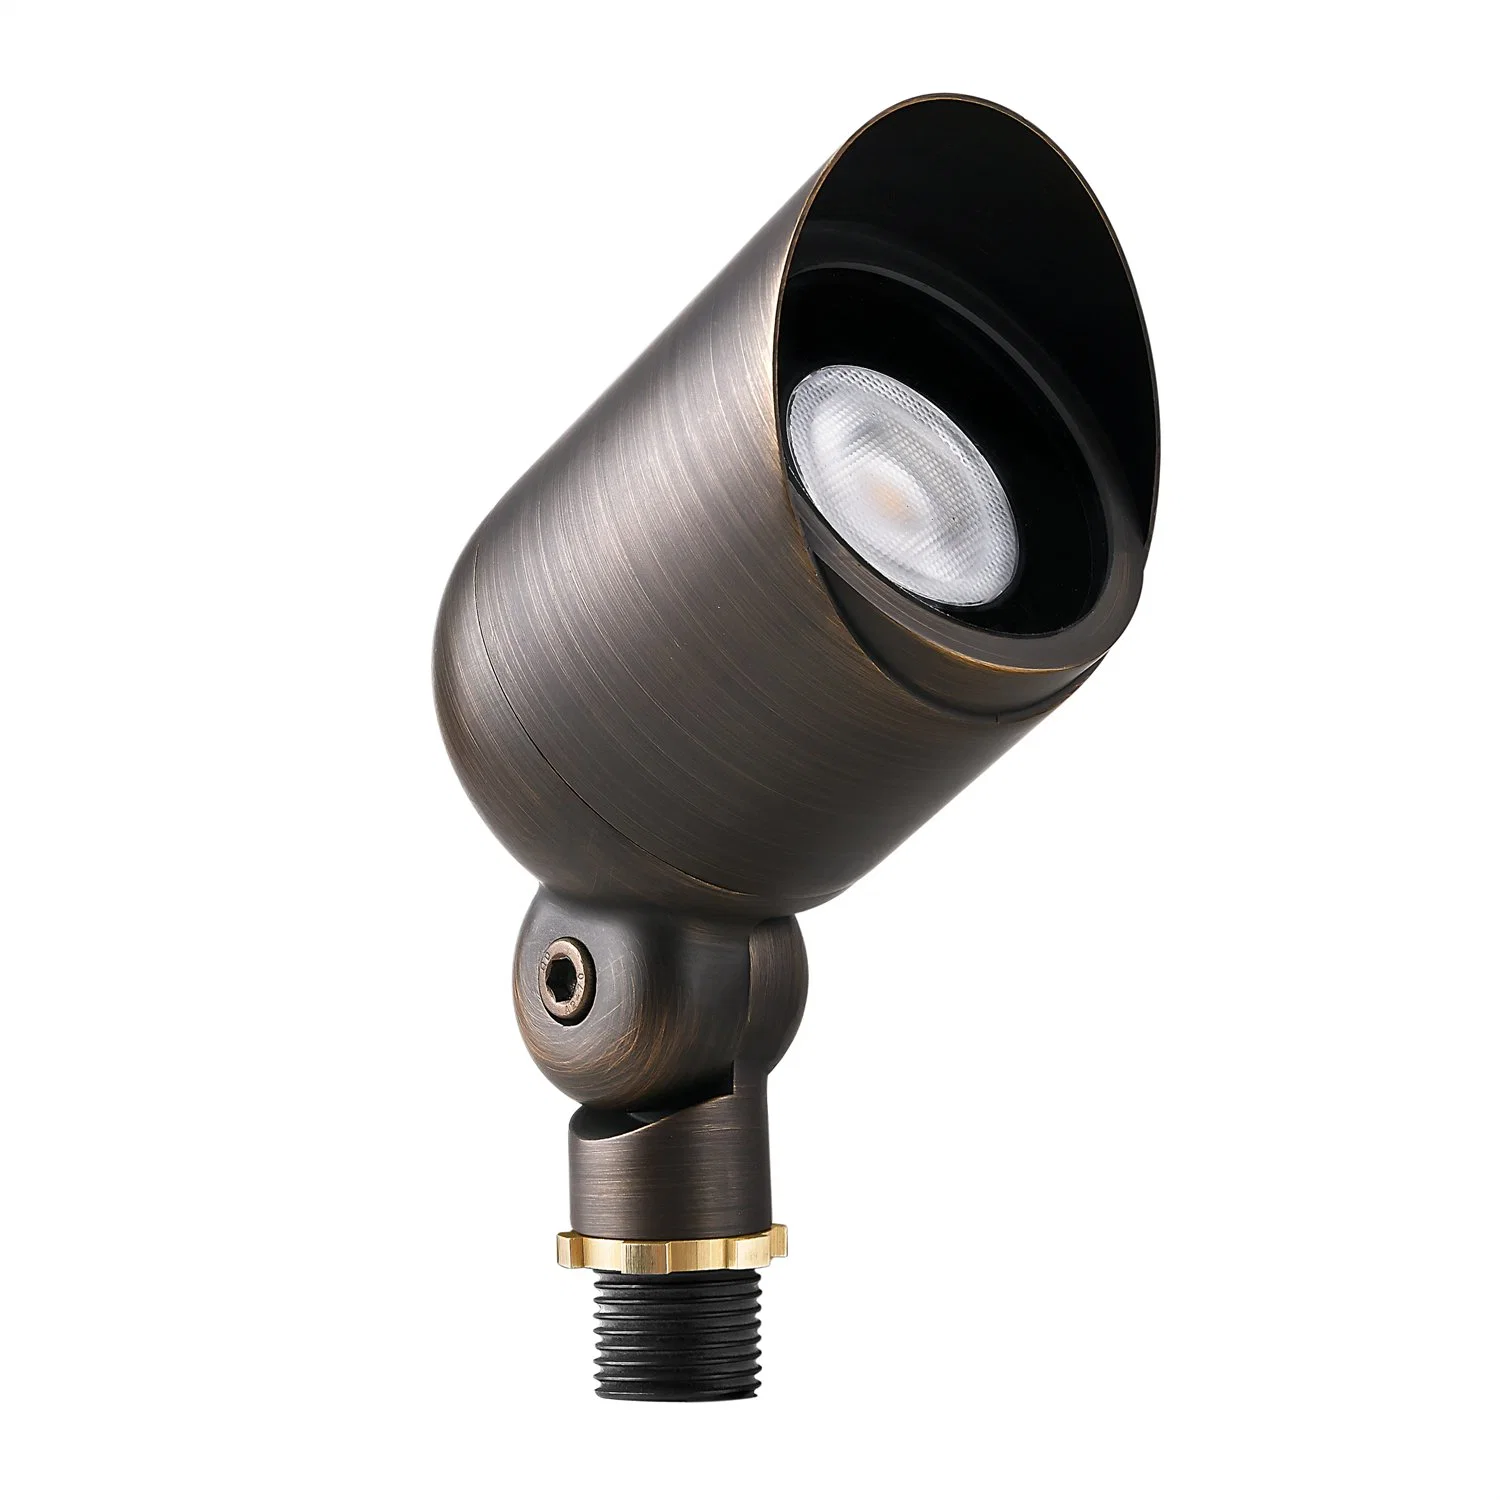 MR16 Bulb 5W Gu5.3 LED Lamp for Garden Lights Landscape Lighting